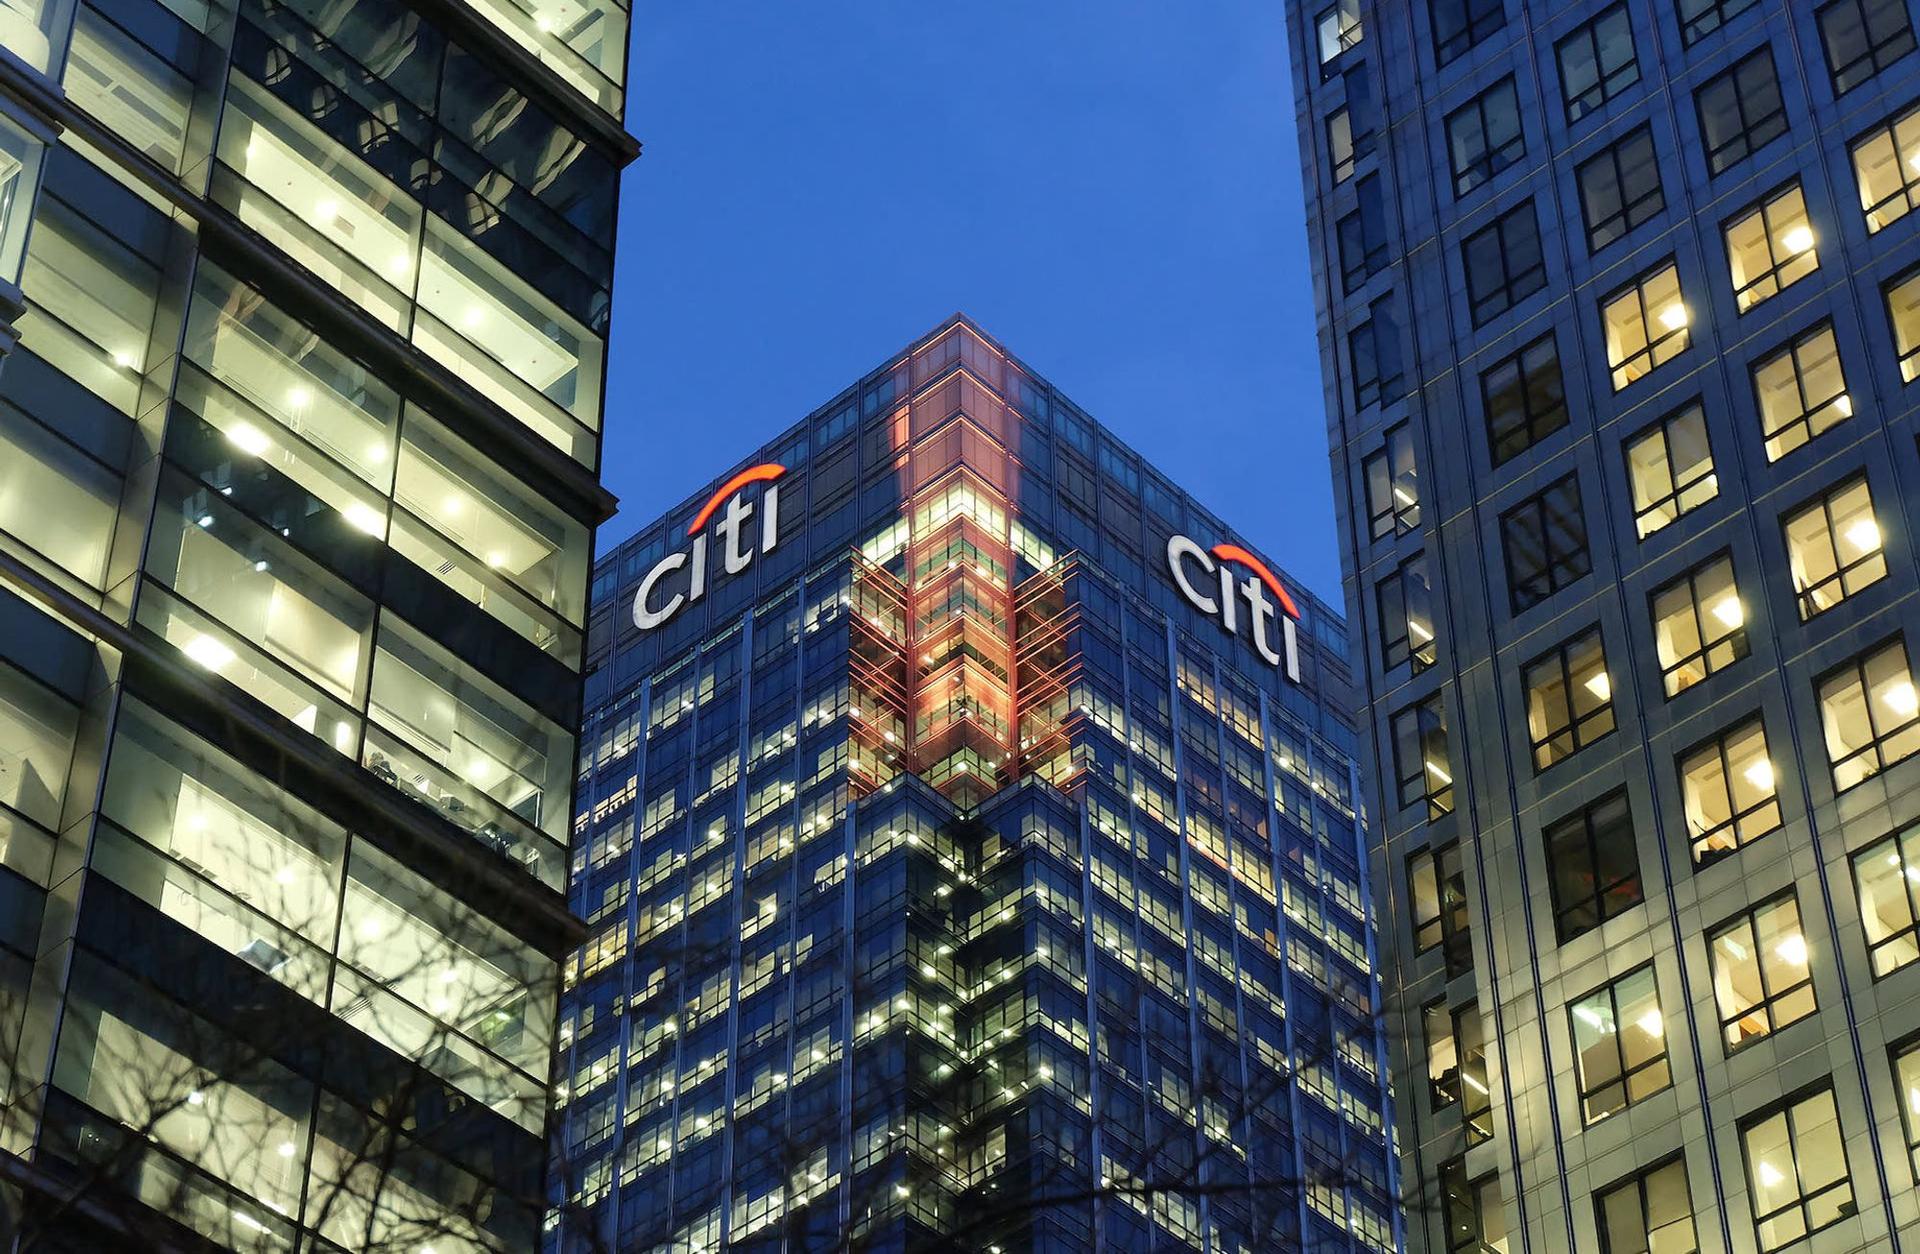 Citigroup, Türk özel sektör tahvil tavsiyesini düşürdü